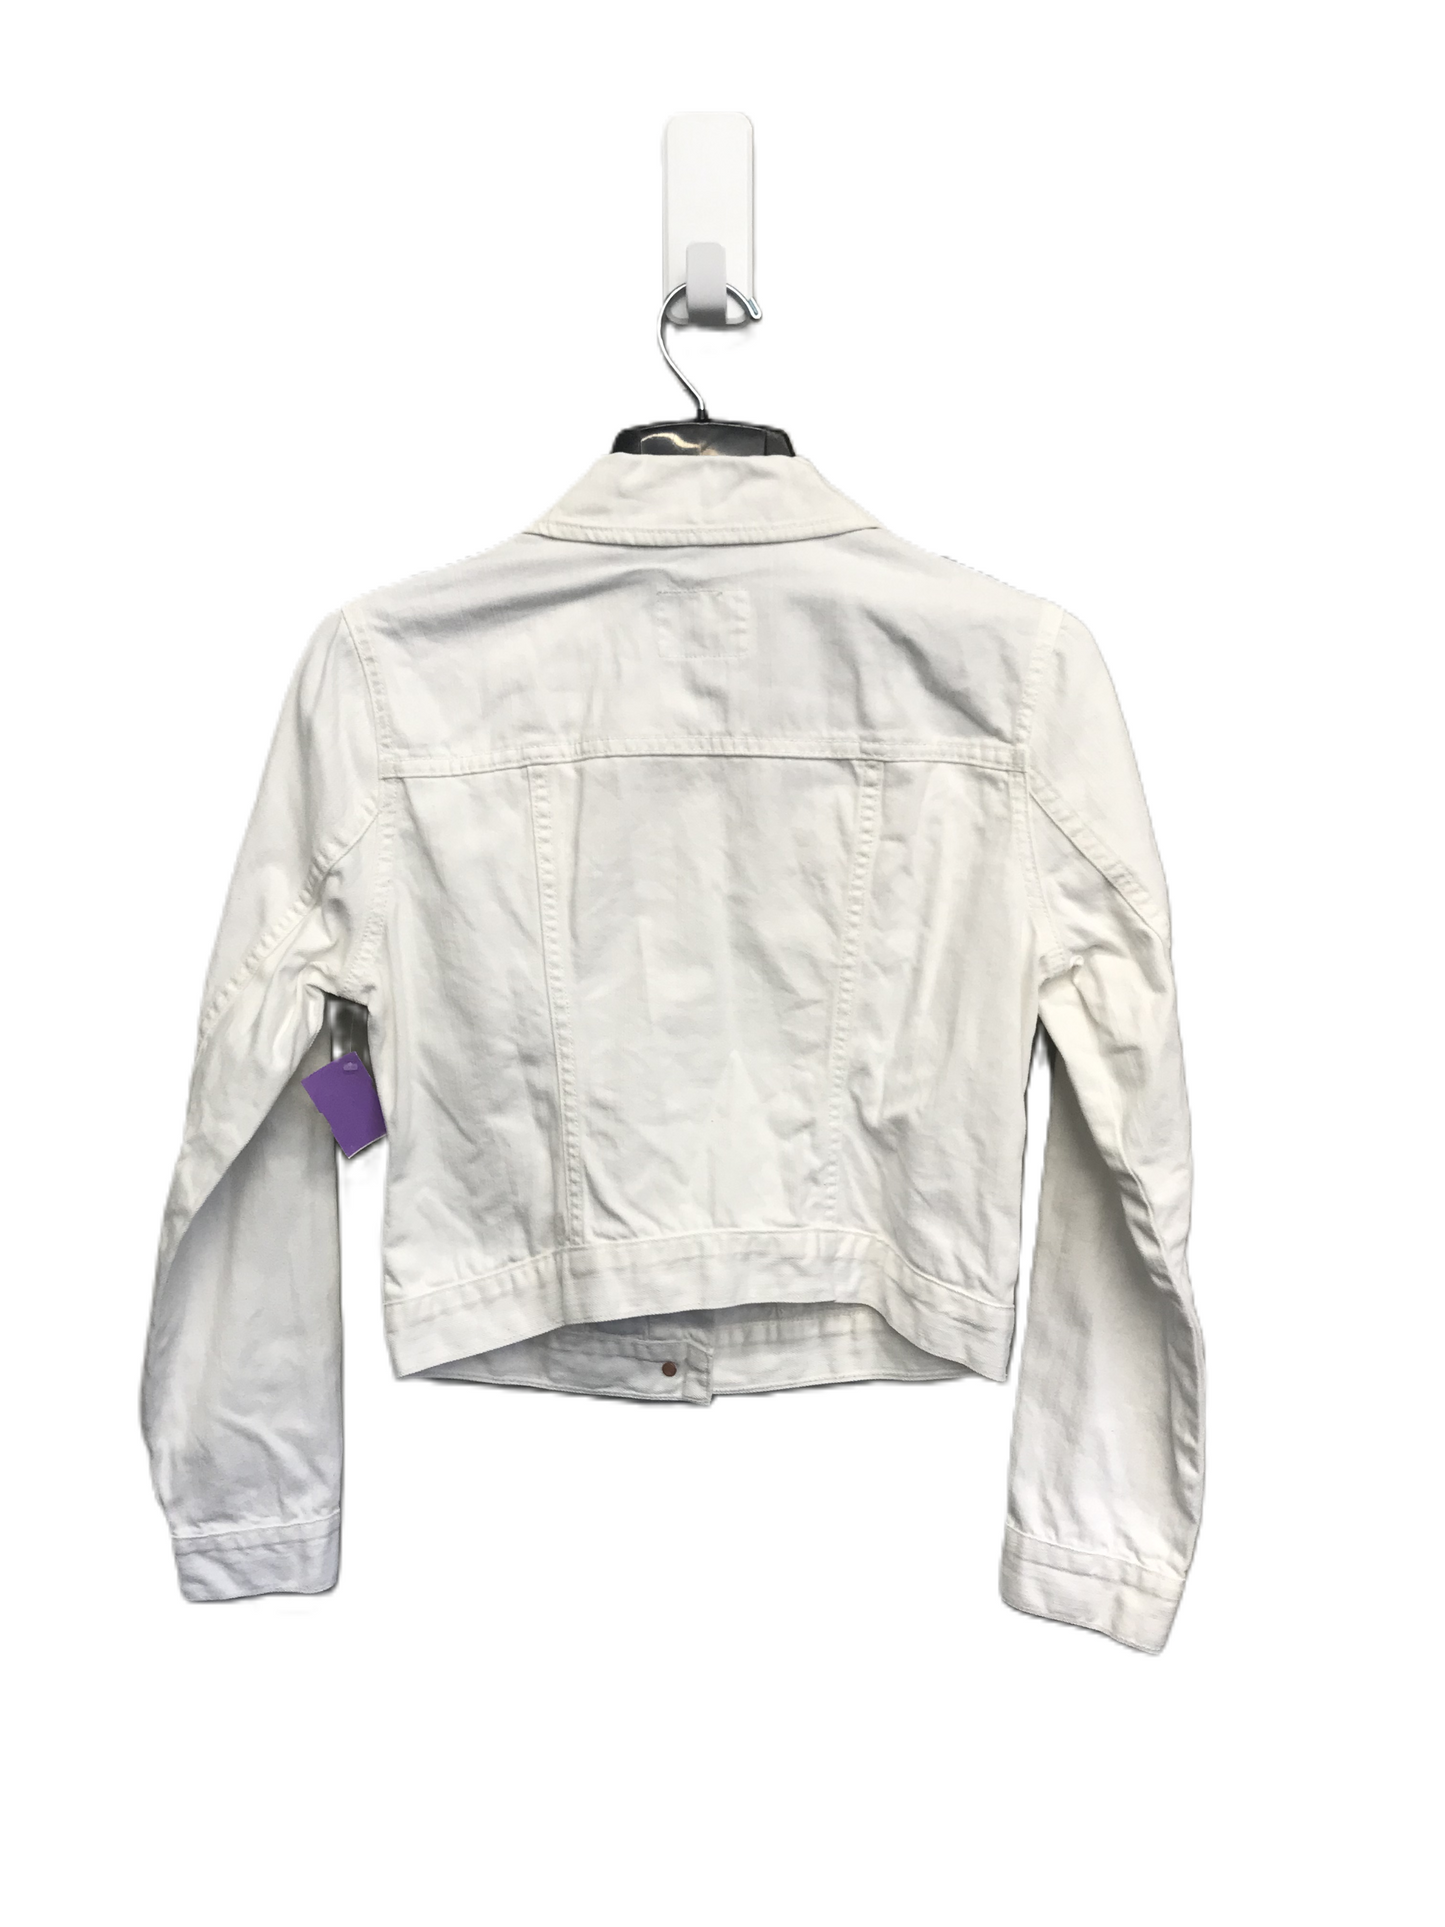 White Jacket Denim By Old Navy, Size: M